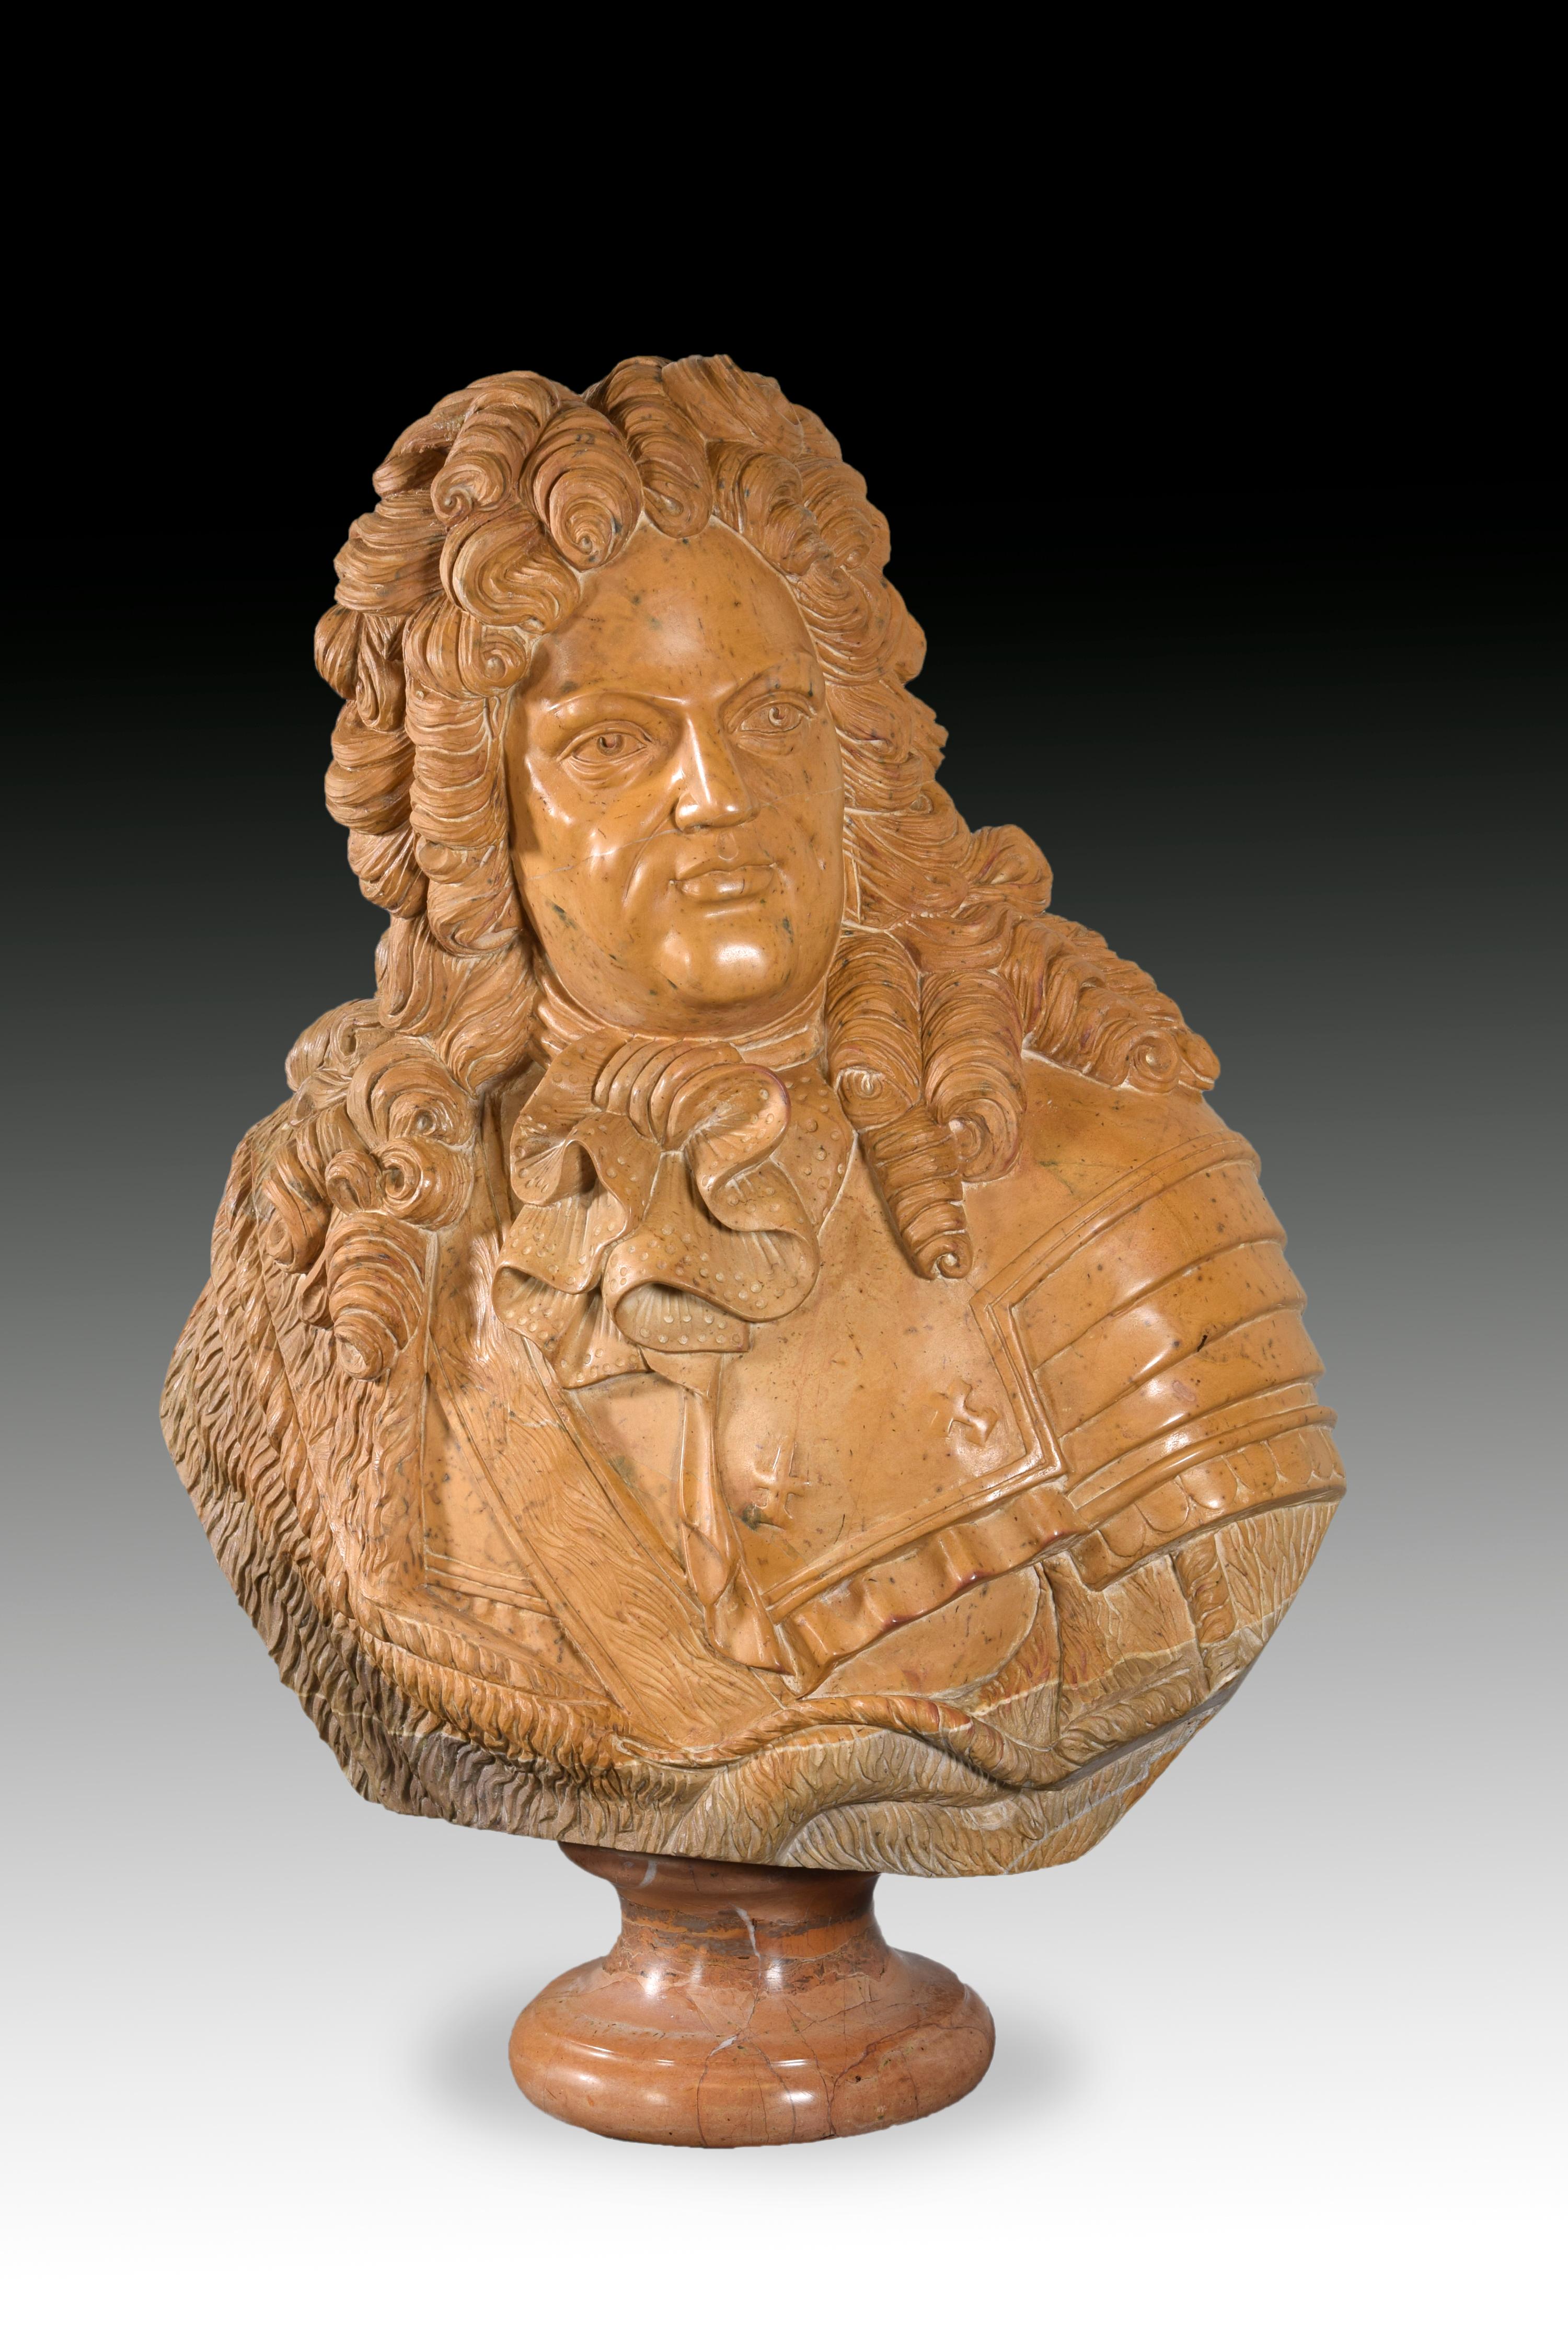 Le gentleman apparaît vêtu d'une armure et d'une coiffe avec une longue perruque bouclée. L'idéalisation, les vêtements et la posture font référence à des exemples de bustes réalisés dans l'environnement de la cour de Louis XIV (17101774) par des